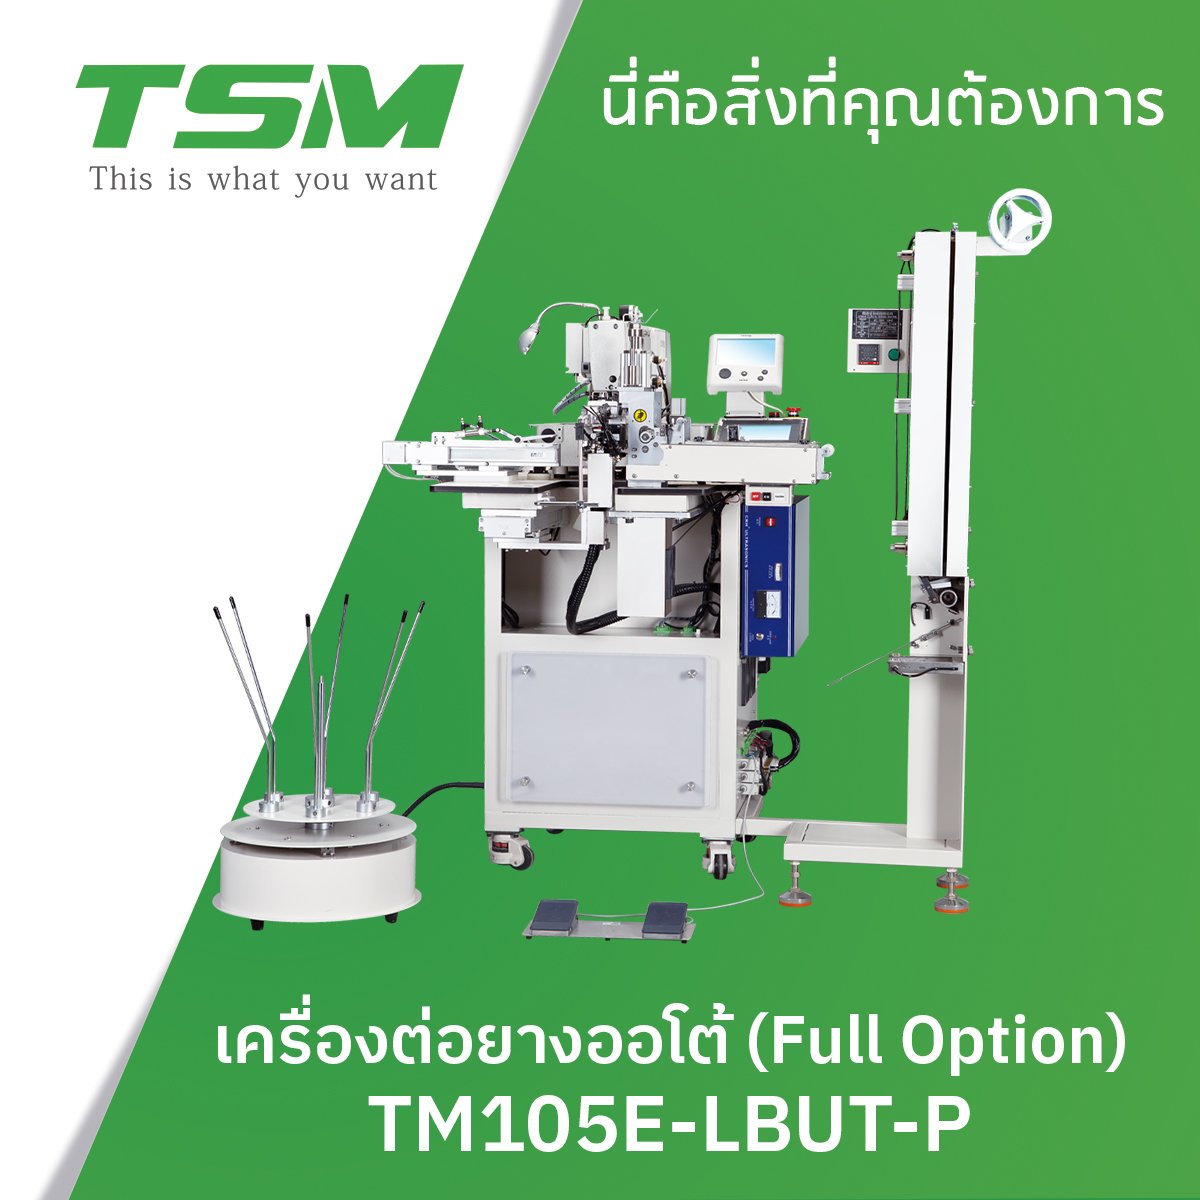 เครื่องต่อยางออโต้ (Full Option)  TSM รุ่น TM105E-LBUT-P